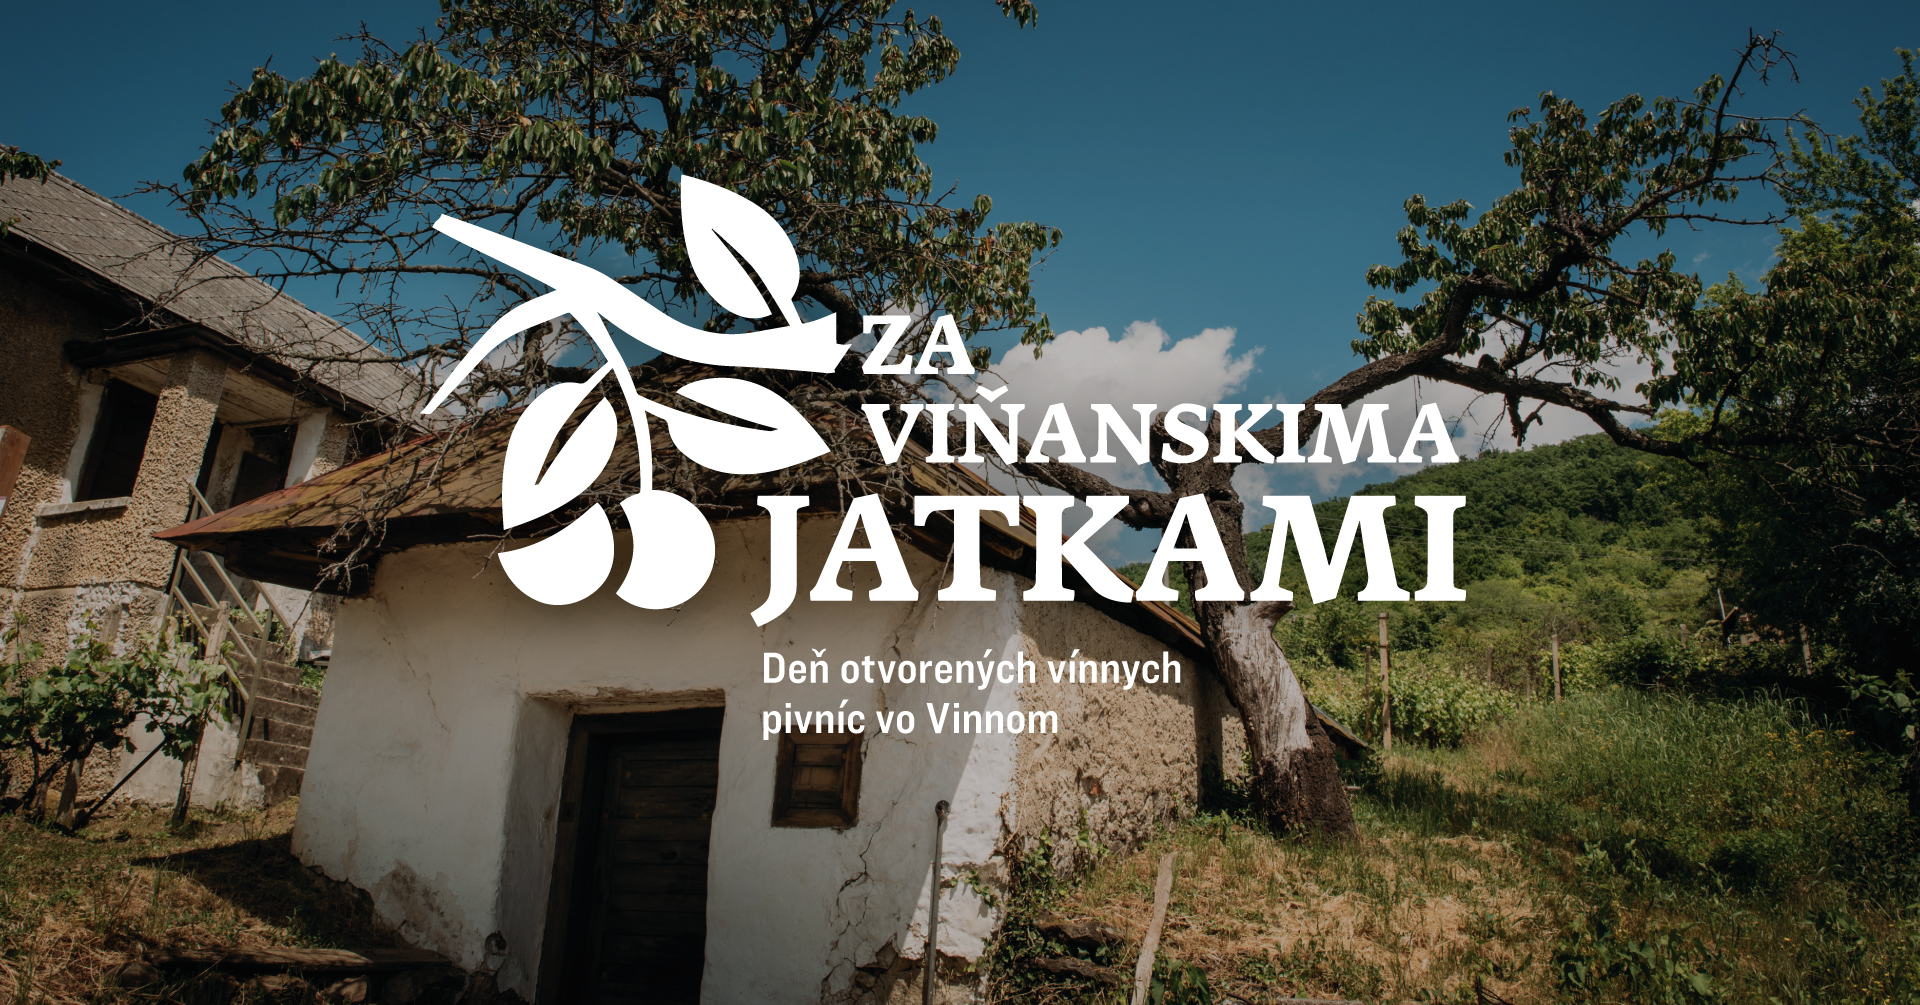 Za vianskima jatkami 2023 Vinn - De otvorench vnnych pivnc vo Vinnom